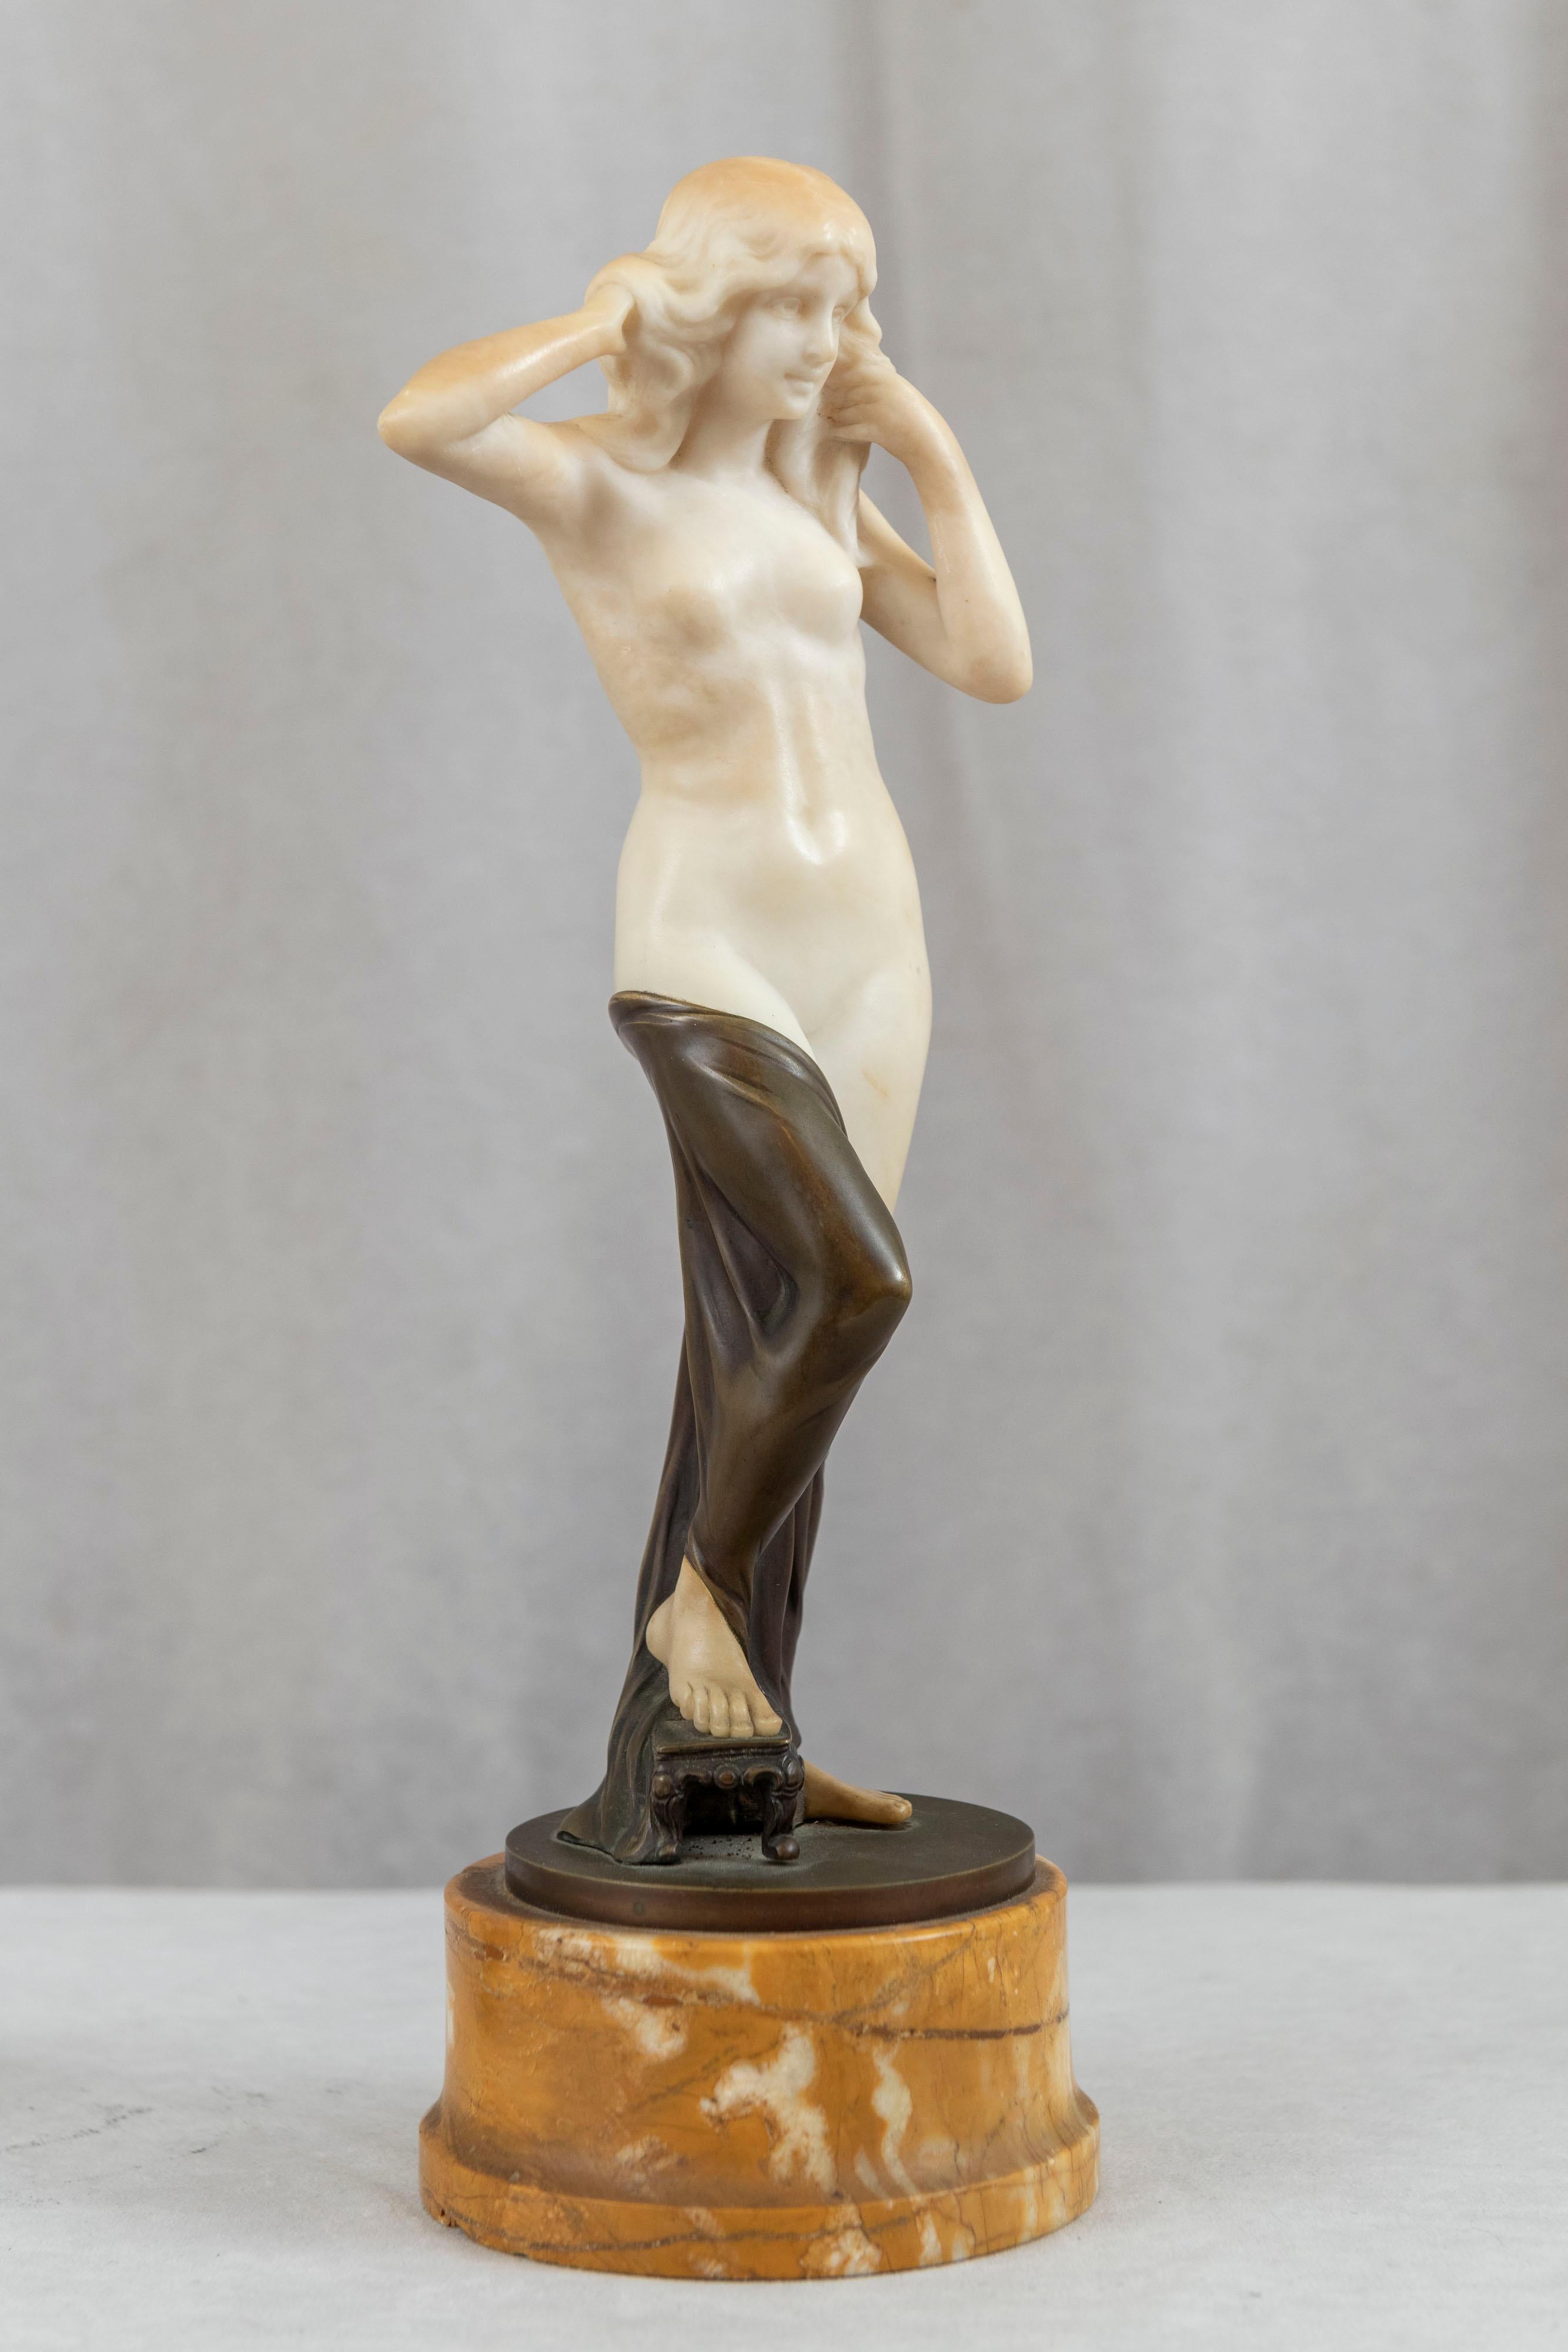 Diese sexy junge nackte Maid zeigt zwei Medien, die zur Herstellung einer Skulptur verwendet werden: Bronzeguss und handgeschnitzter Alabaster. Der weiße Alabaster erweckt die Statue zum Leben und ist eine schöne Ergänzung zu jeder Frauenstatue. Die